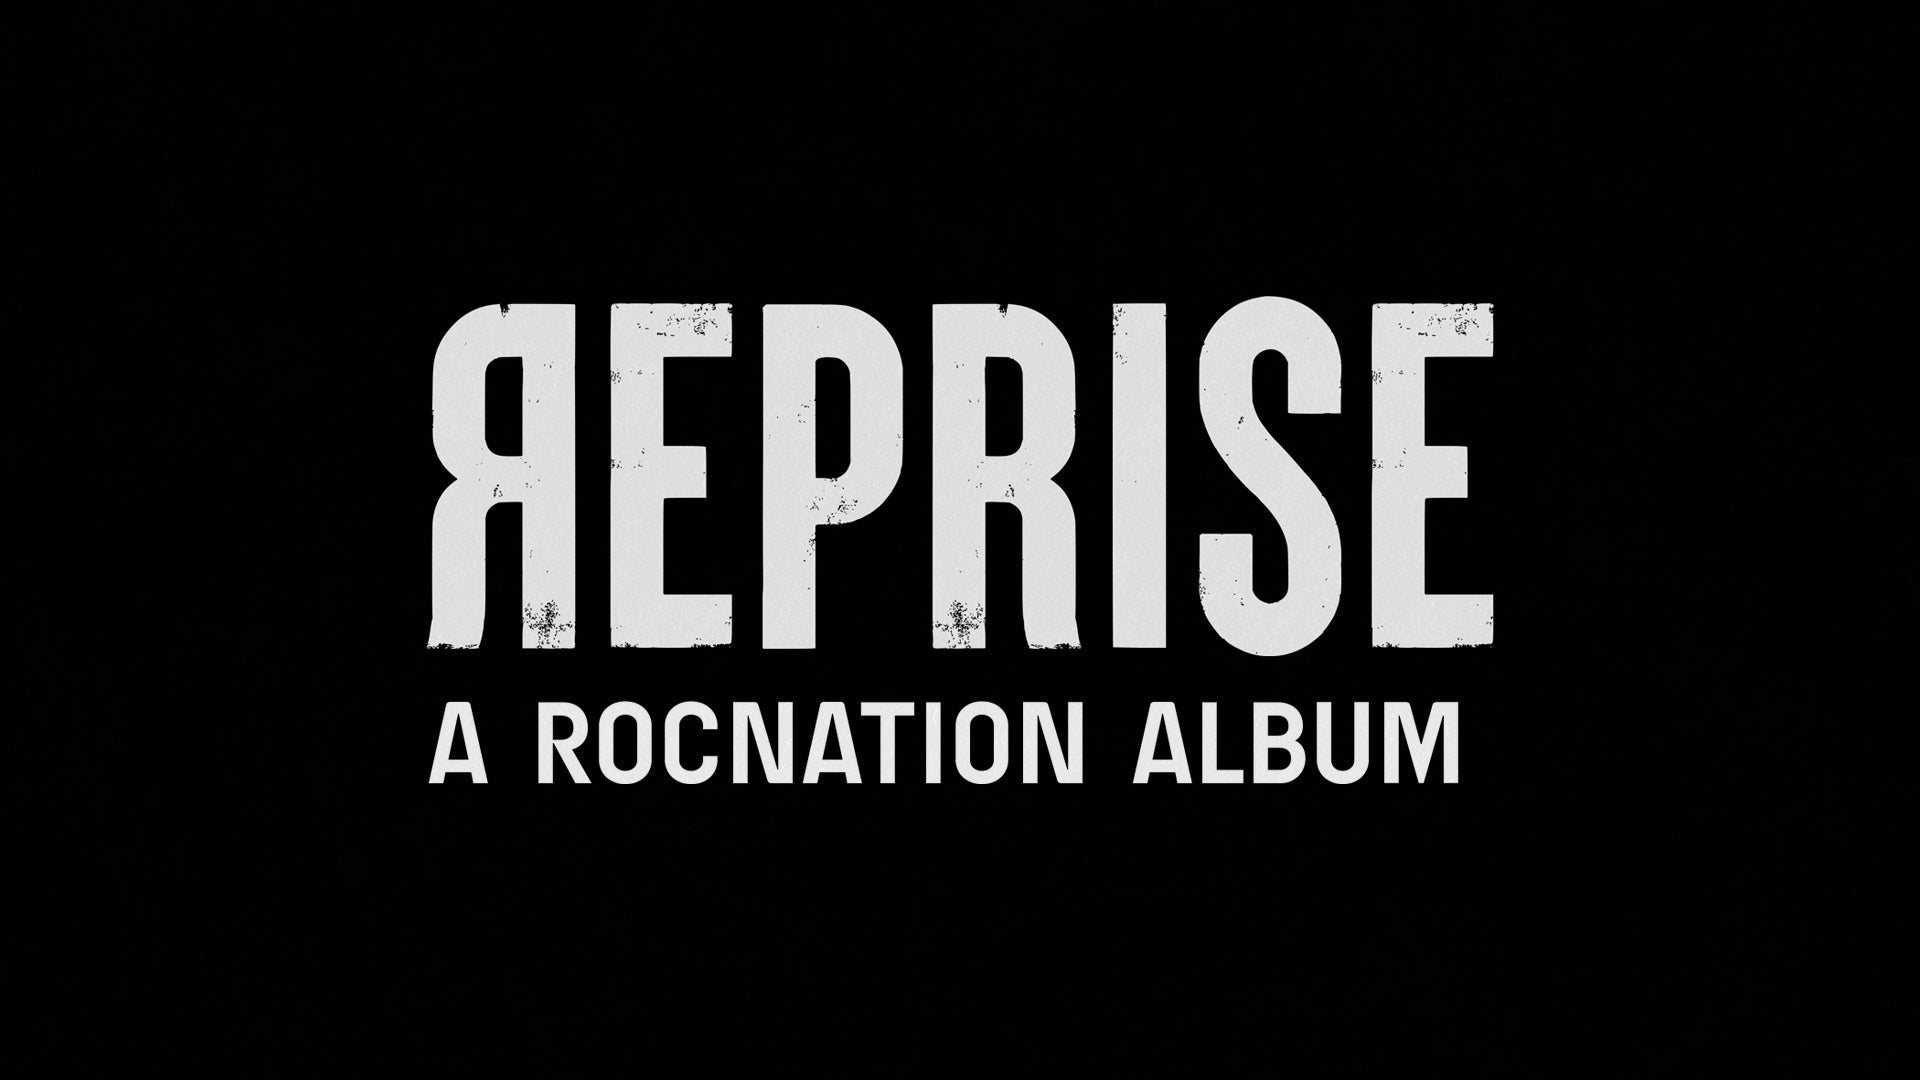 REPRISE: A ROC NATION ALBUM — Live Nation